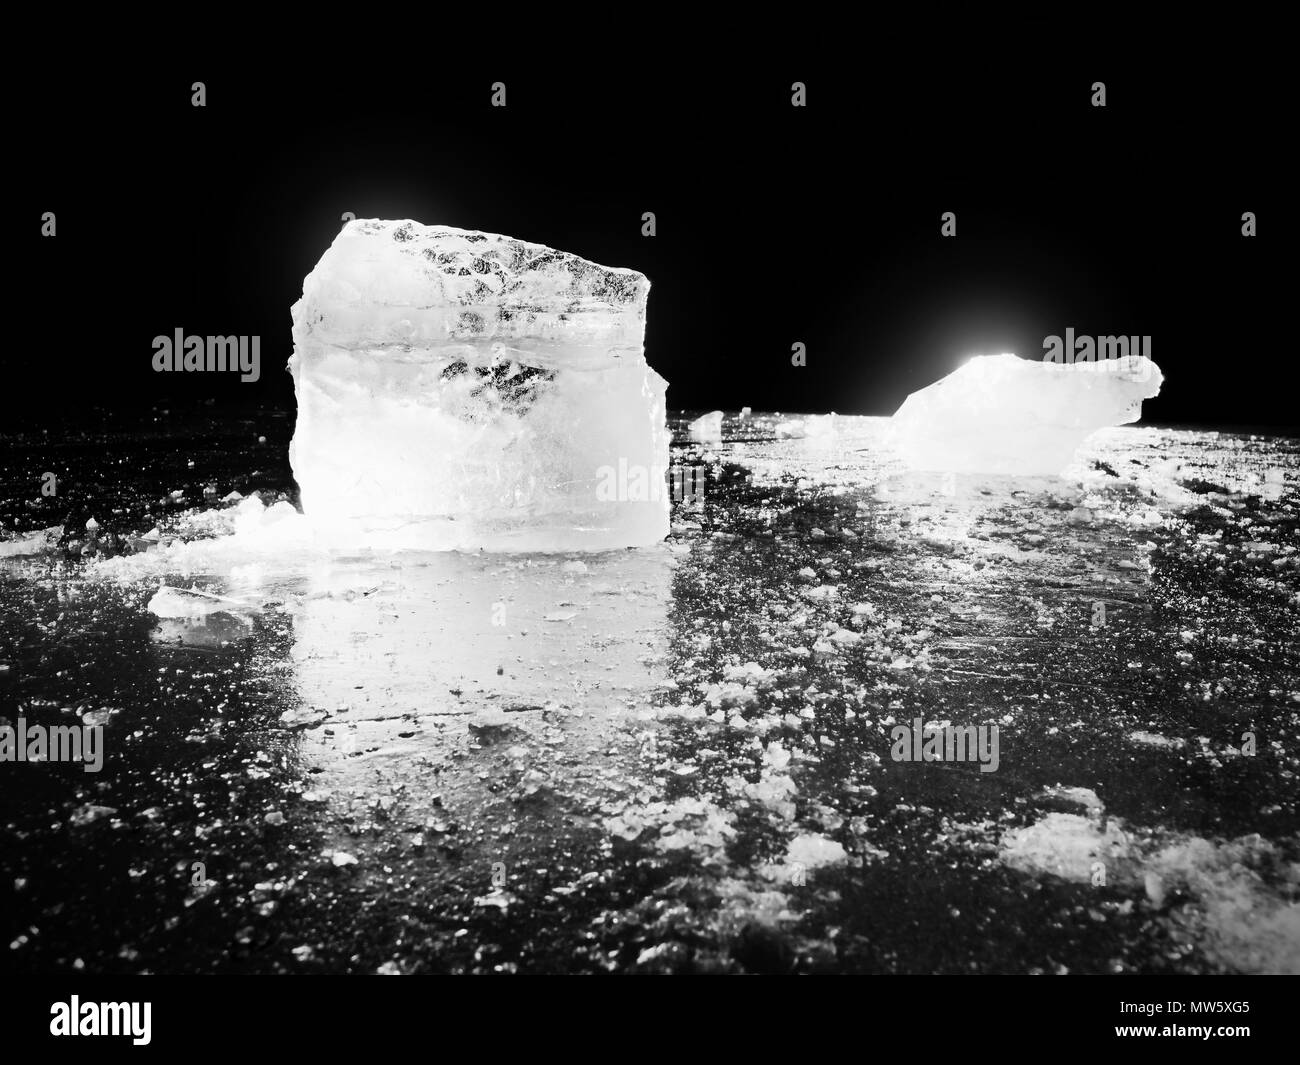 Glace avec réflexion sur le lac. Banc de glace concassée réfléchissant sur fond naturel. Iceberg naturelles avec la profondeur de champ. Photo en noir et blanc. Banque D'Images